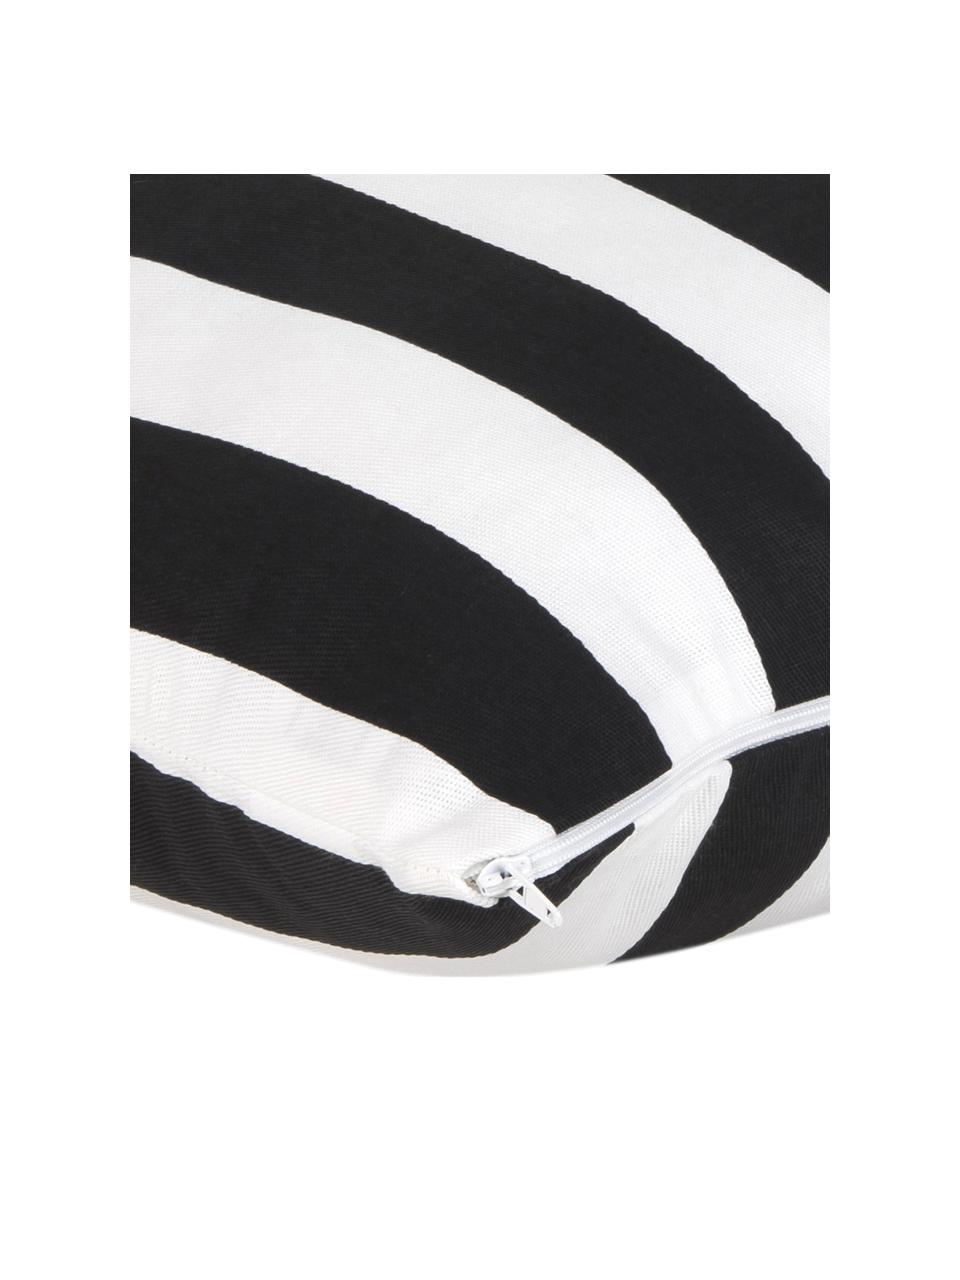 Gestreifte Kissenhülle Timon in Schwarz/Weiß, 100% Baumwolle, Schwarz, Weiß, B 40 x L 40 cm